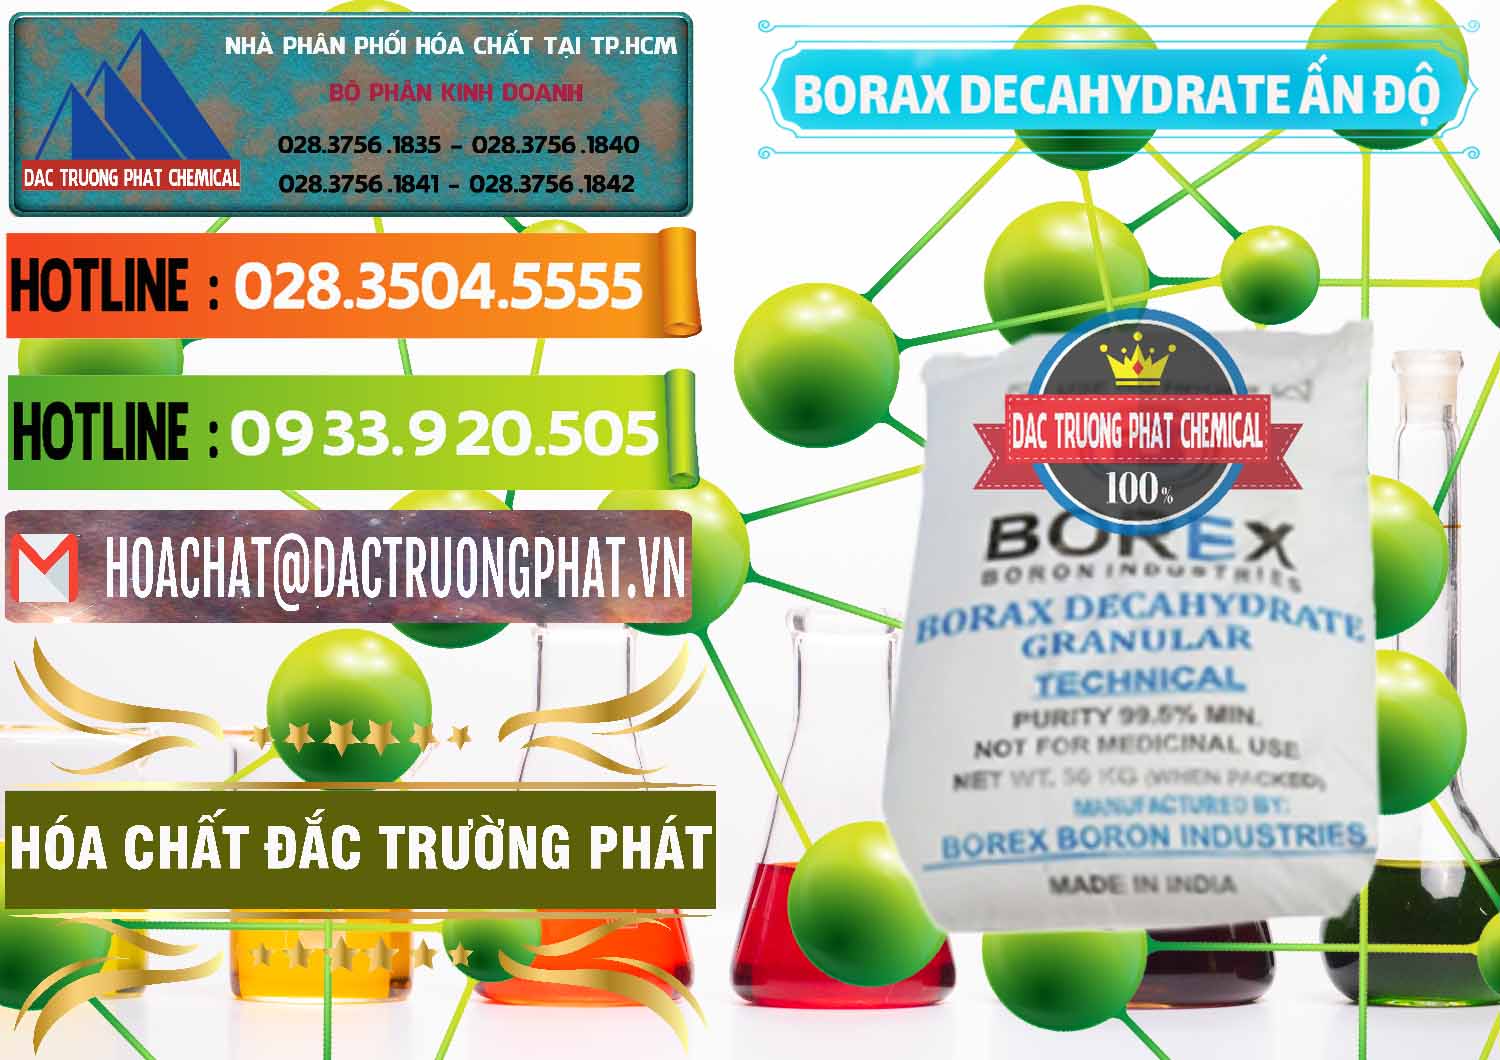 Cty chuyên phân phối ( bán ) Borax Decahydrate Ấn Độ India - 0449 - Cty chuyên kinh doanh ( cung cấp ) hóa chất tại TP.HCM - cungcaphoachat.com.vn